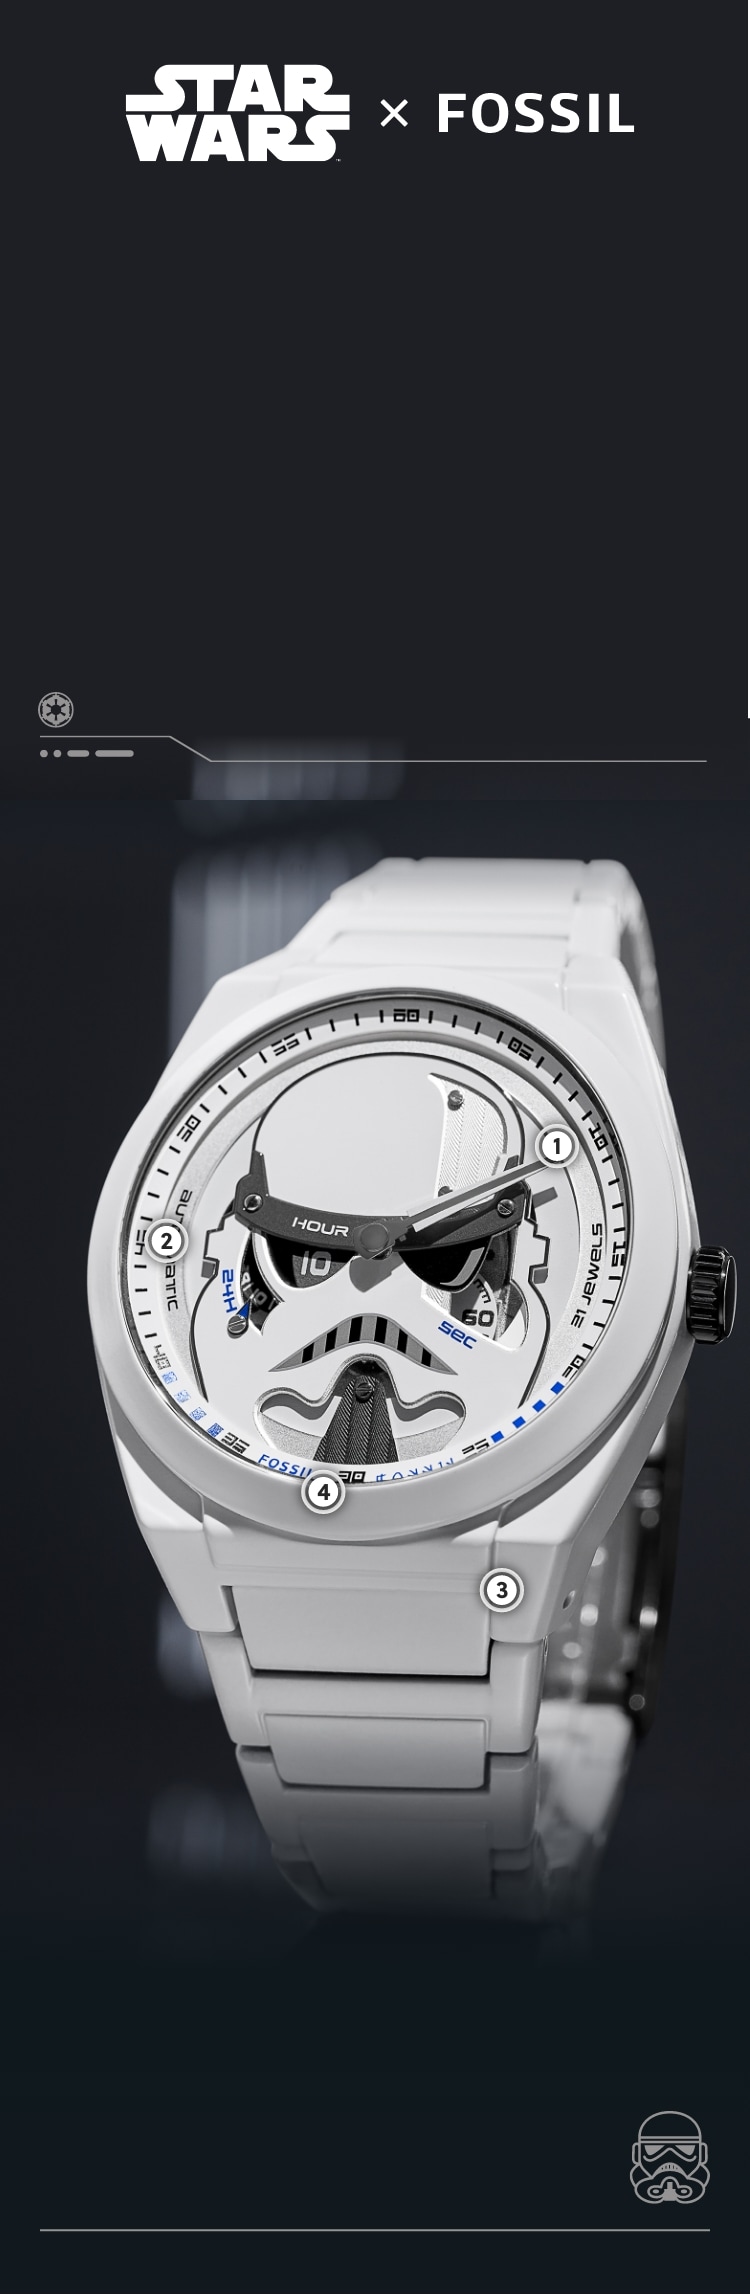 Gros plan d’une montre recouverte de résine blanche avec un casque de stormtrooper en relief sur un cadran blanc.